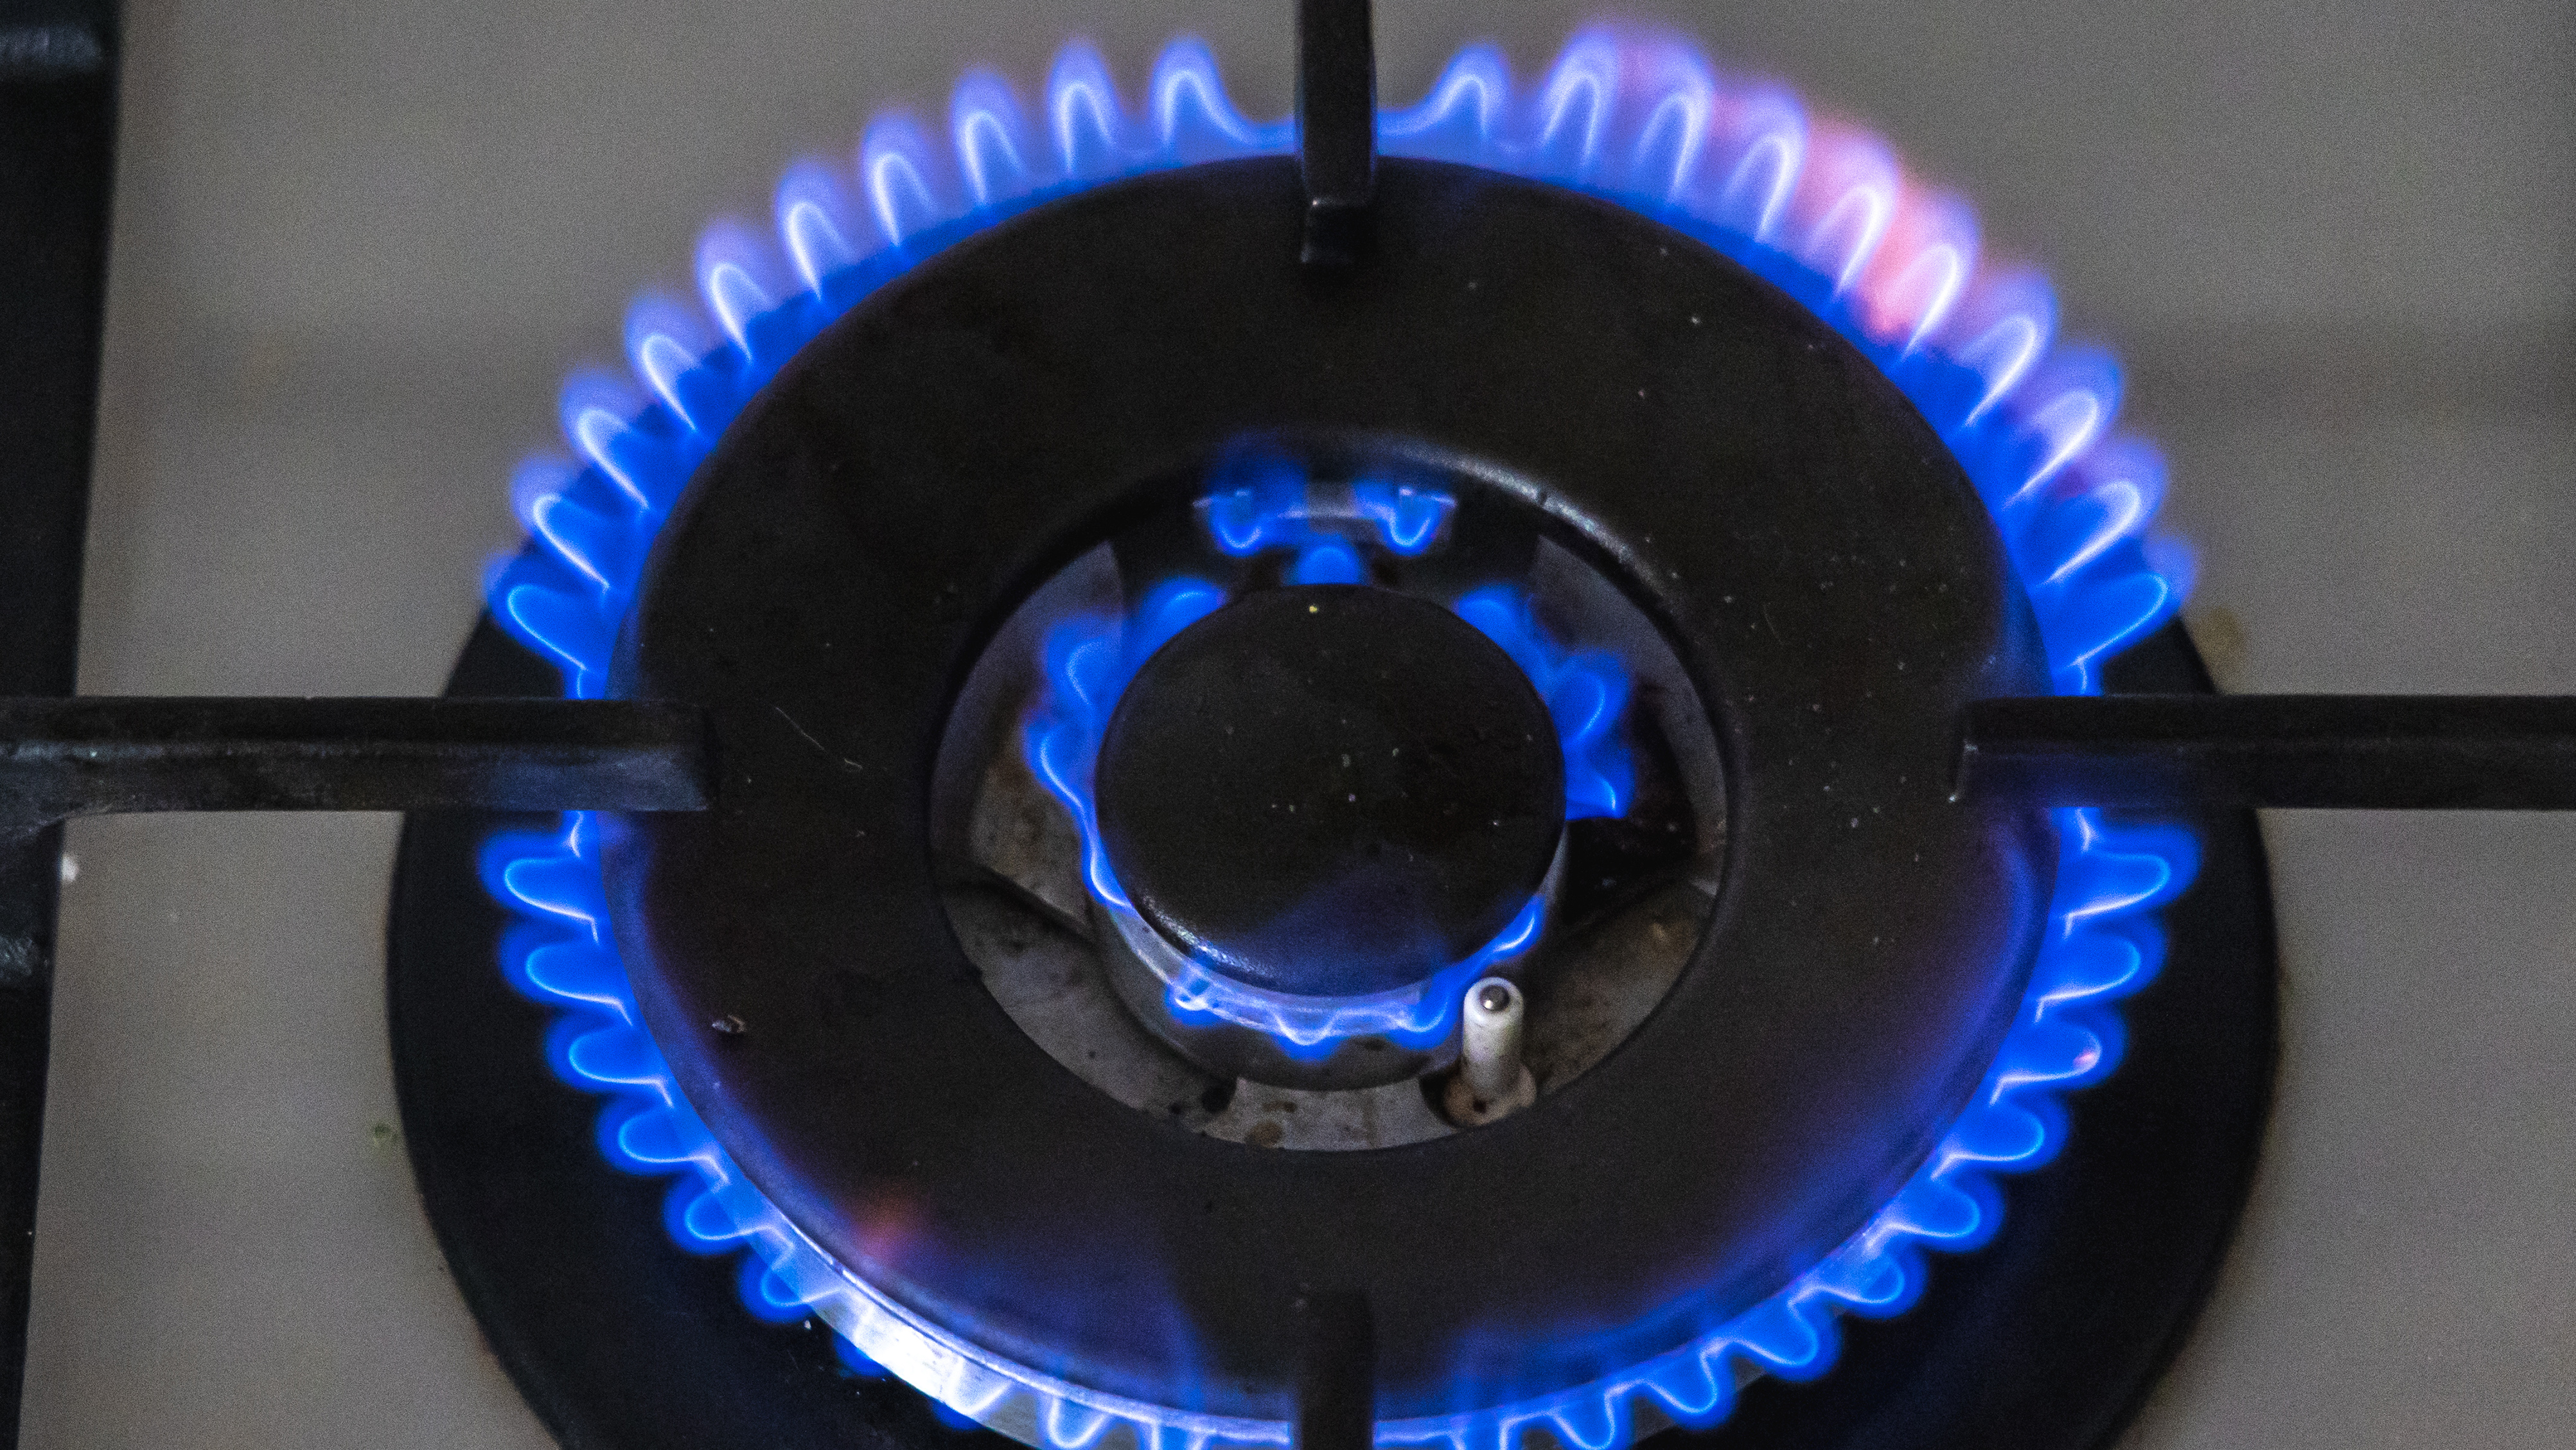 Ograniczenie cen gazu dla konsumentów w 2023 r.?